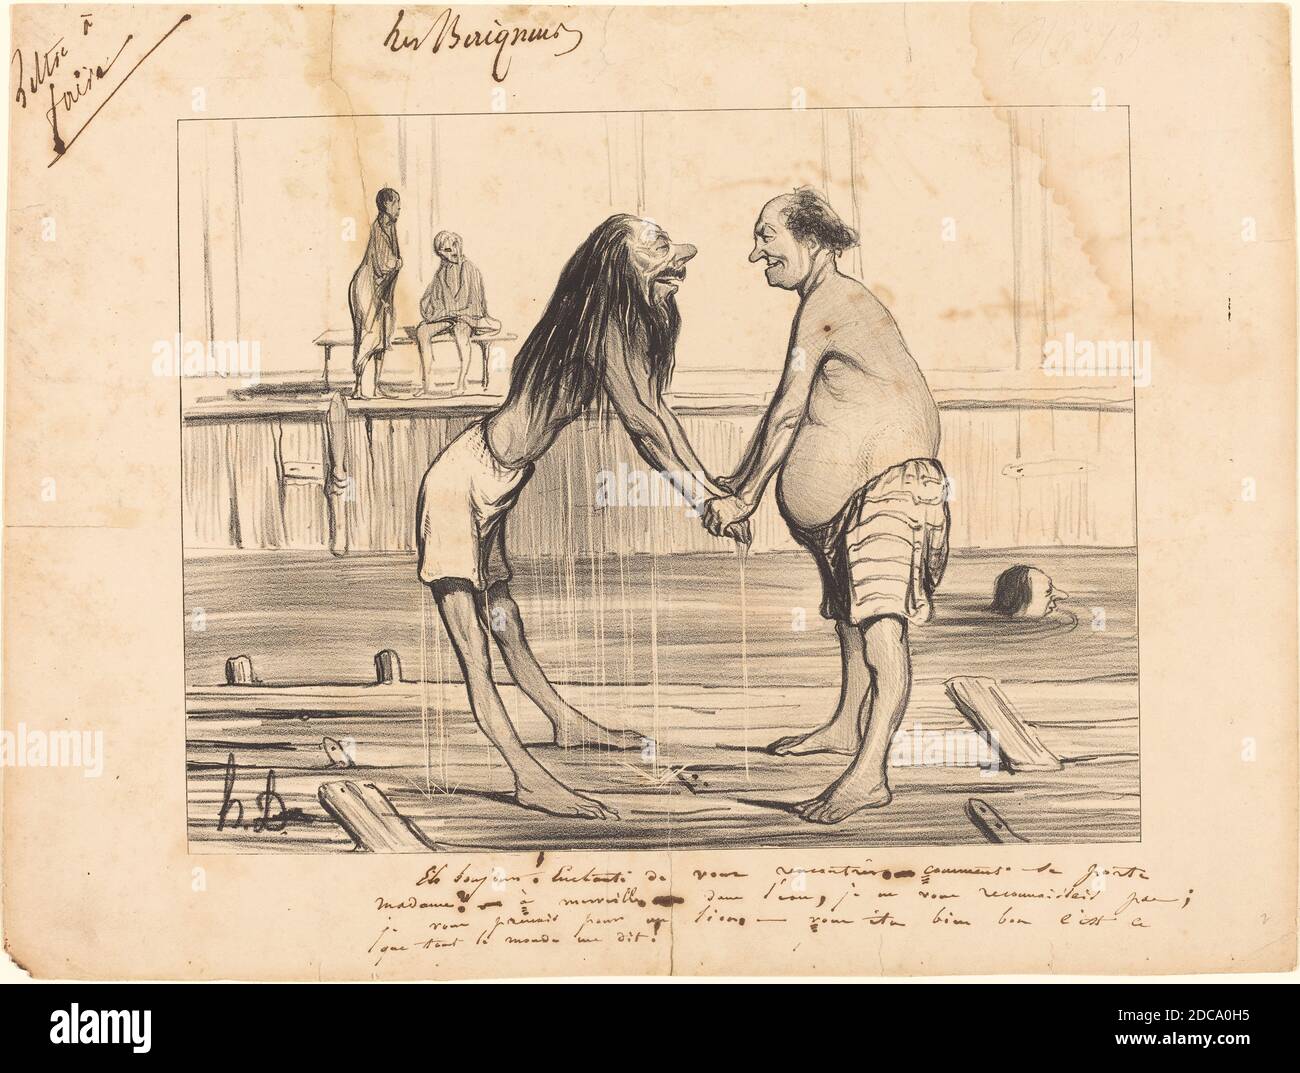 Honoré Daumier, (artist), French, 1808 - 1879, Eh bonjour! enchanté de vous rencontrer..., Les Baigneurs: pl.13, (series), 1840, lithograph Stock Photo